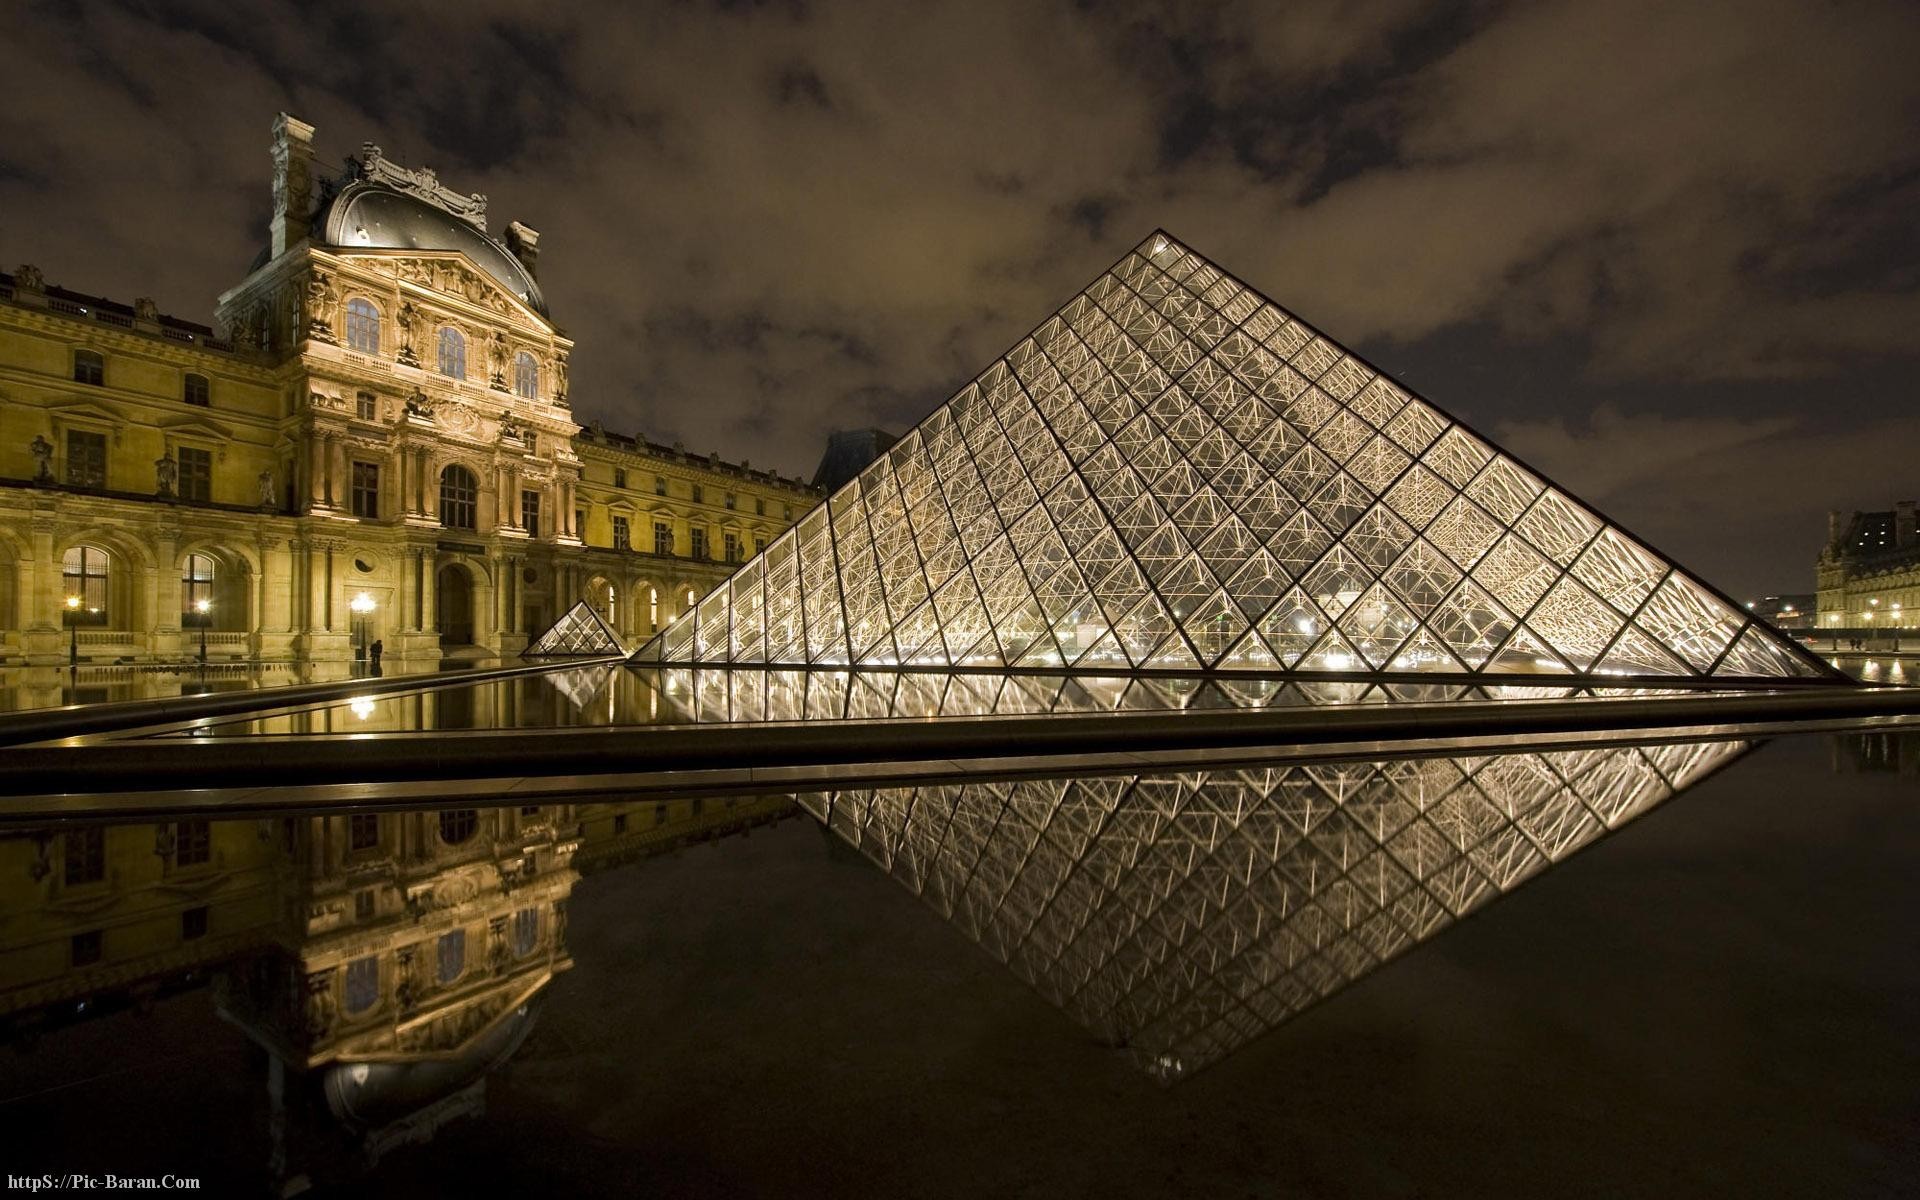 General 1920x1200 Louvre museum reflection landscape Paris France landmark